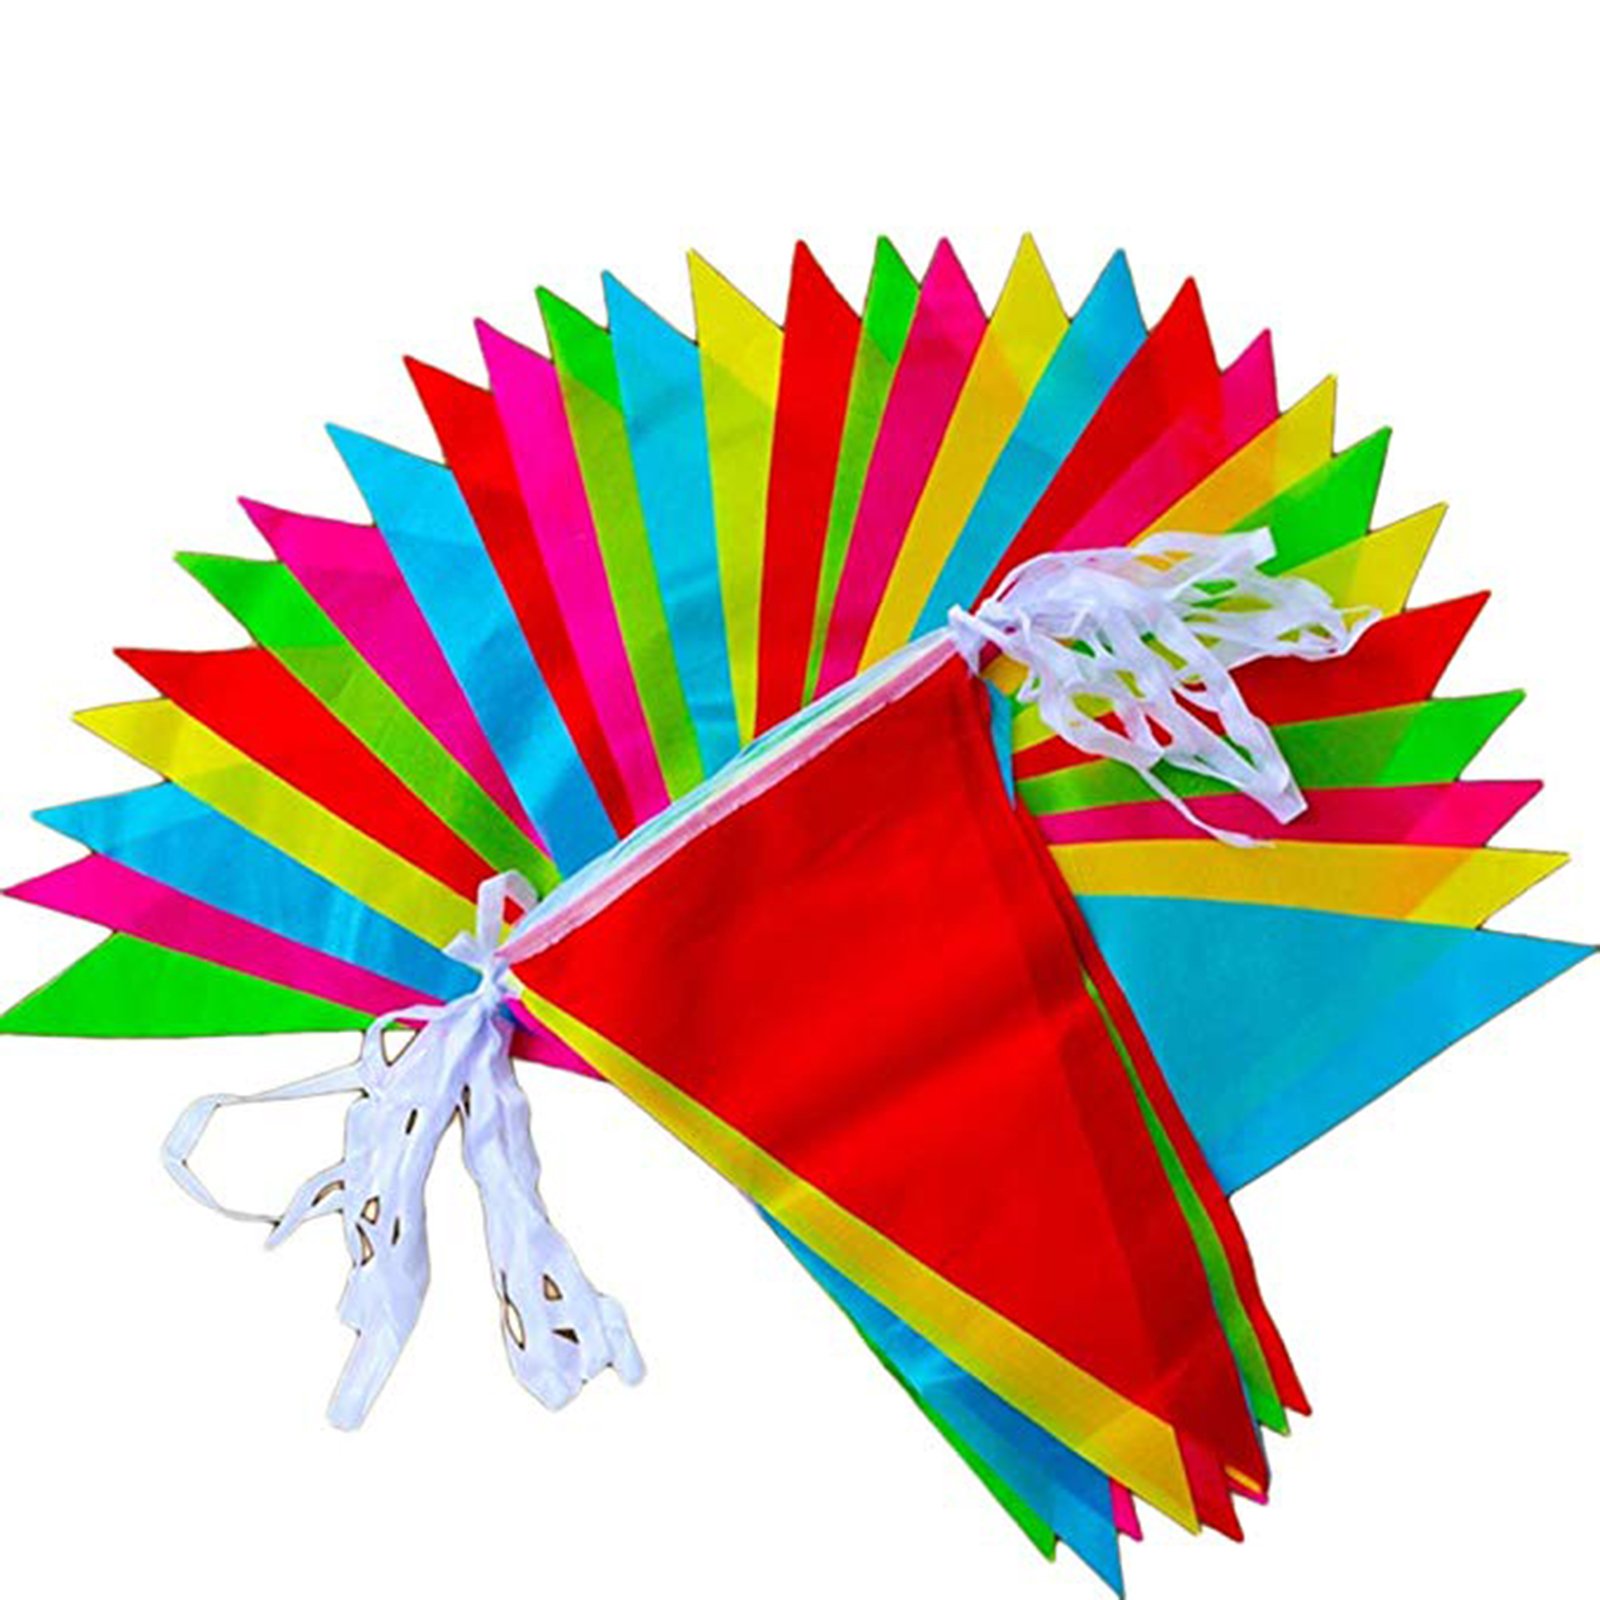 JZK 80 Metros Bunting Partido Colores triángulo Banner Bandera Cuerda Colgando decoración para Boda cumpleaños celebracion Fiesta Bienvenida Navidad víspera Escuela jardín Accesorios Decoraciones 